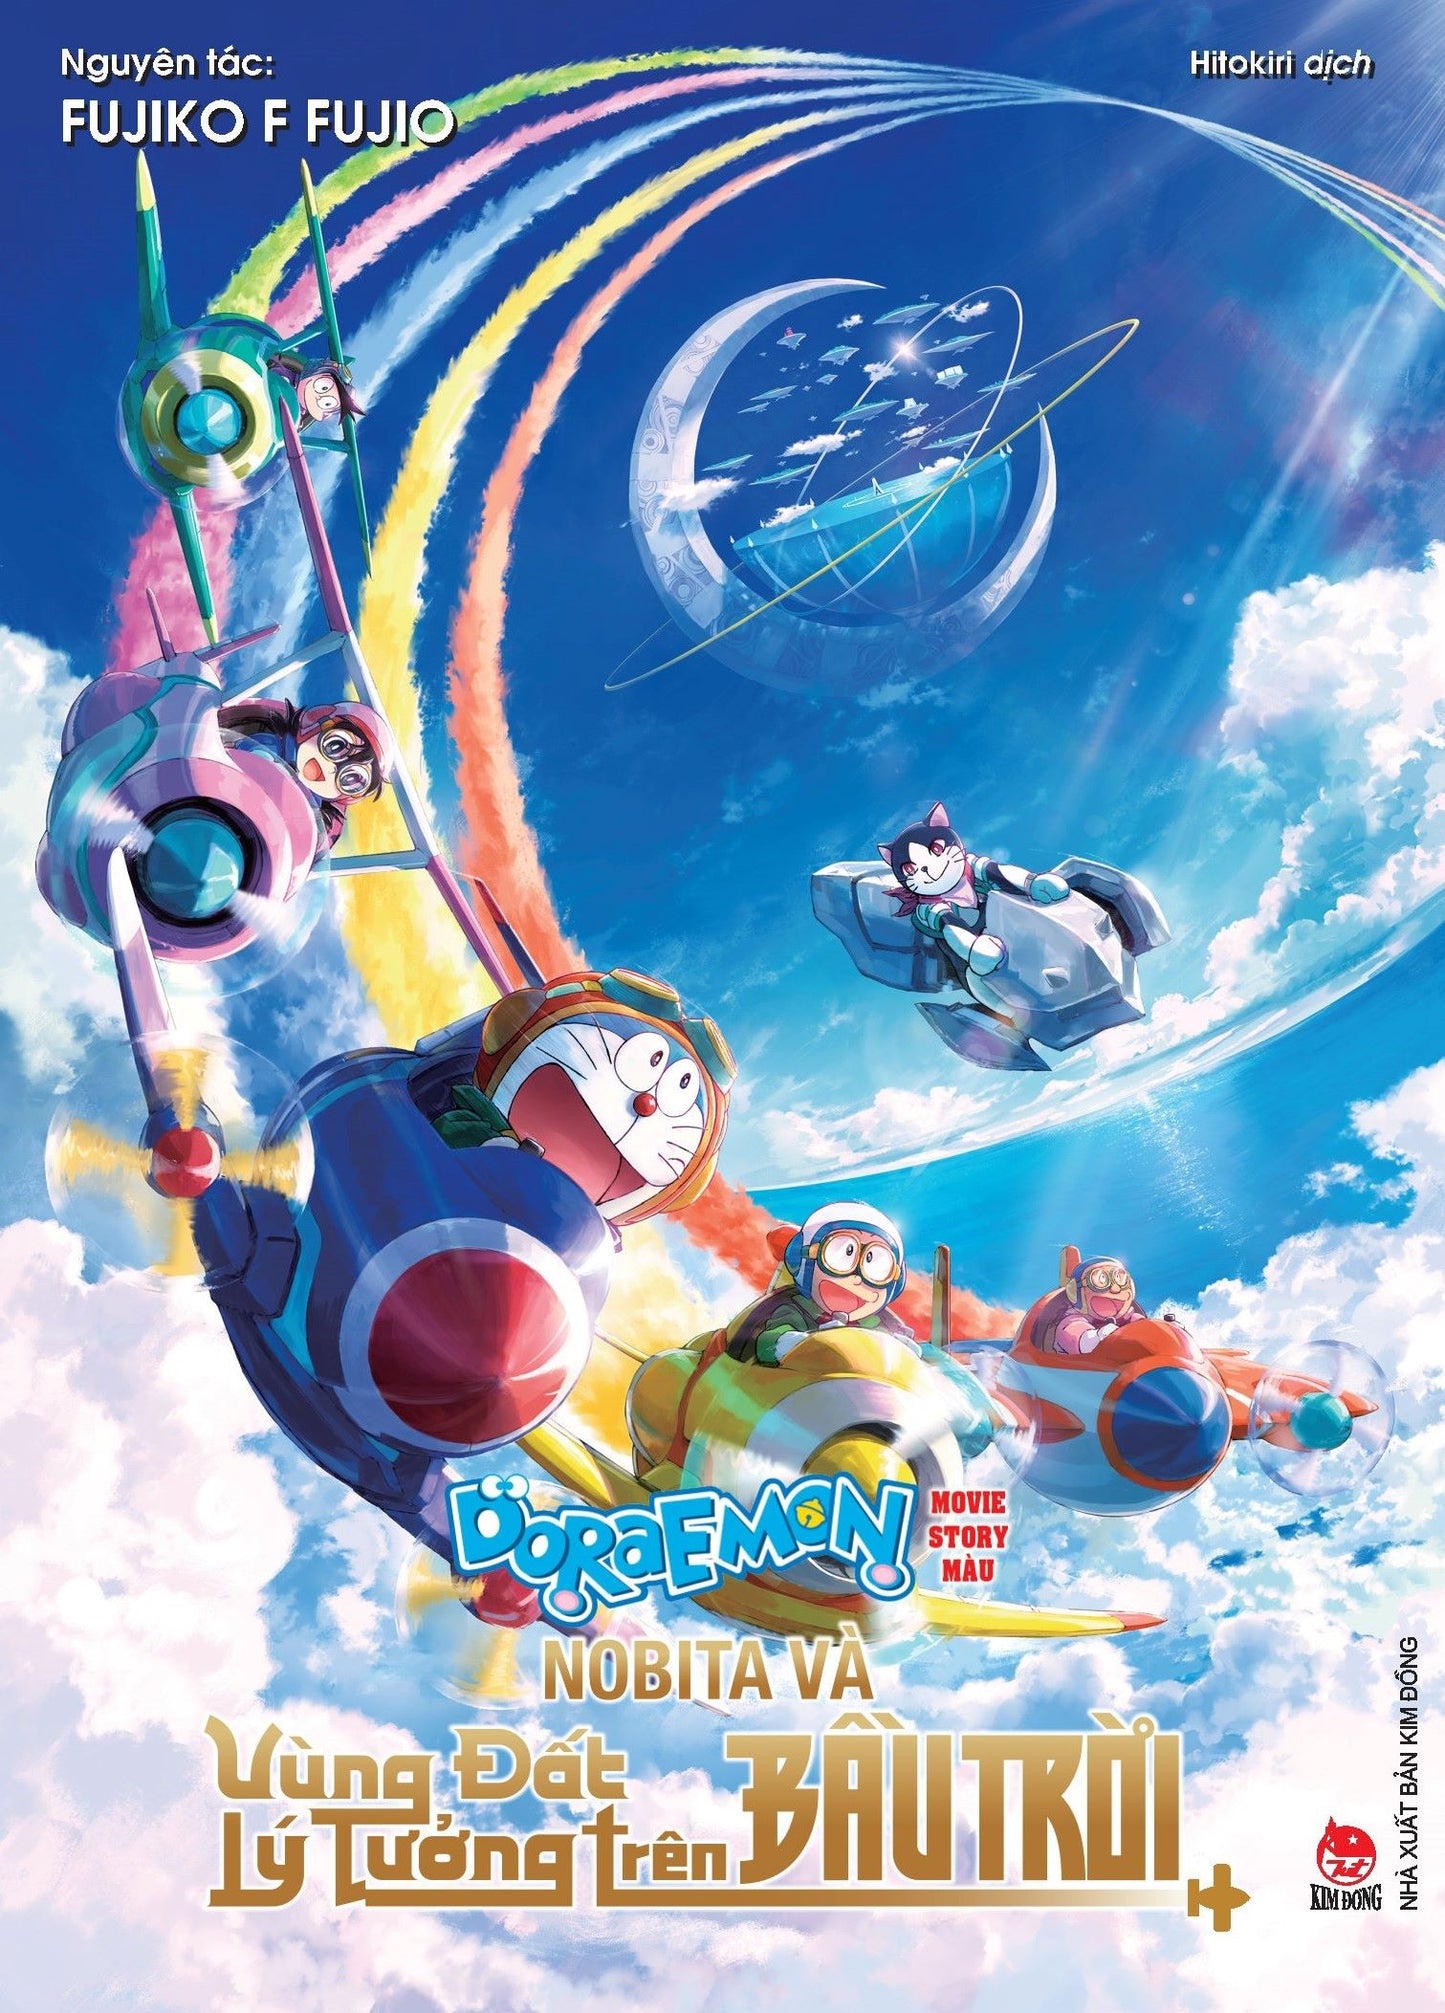 Doraemon Movie story Màu: Nobita và vùng đất lý tưởng trên bầu trời NEW